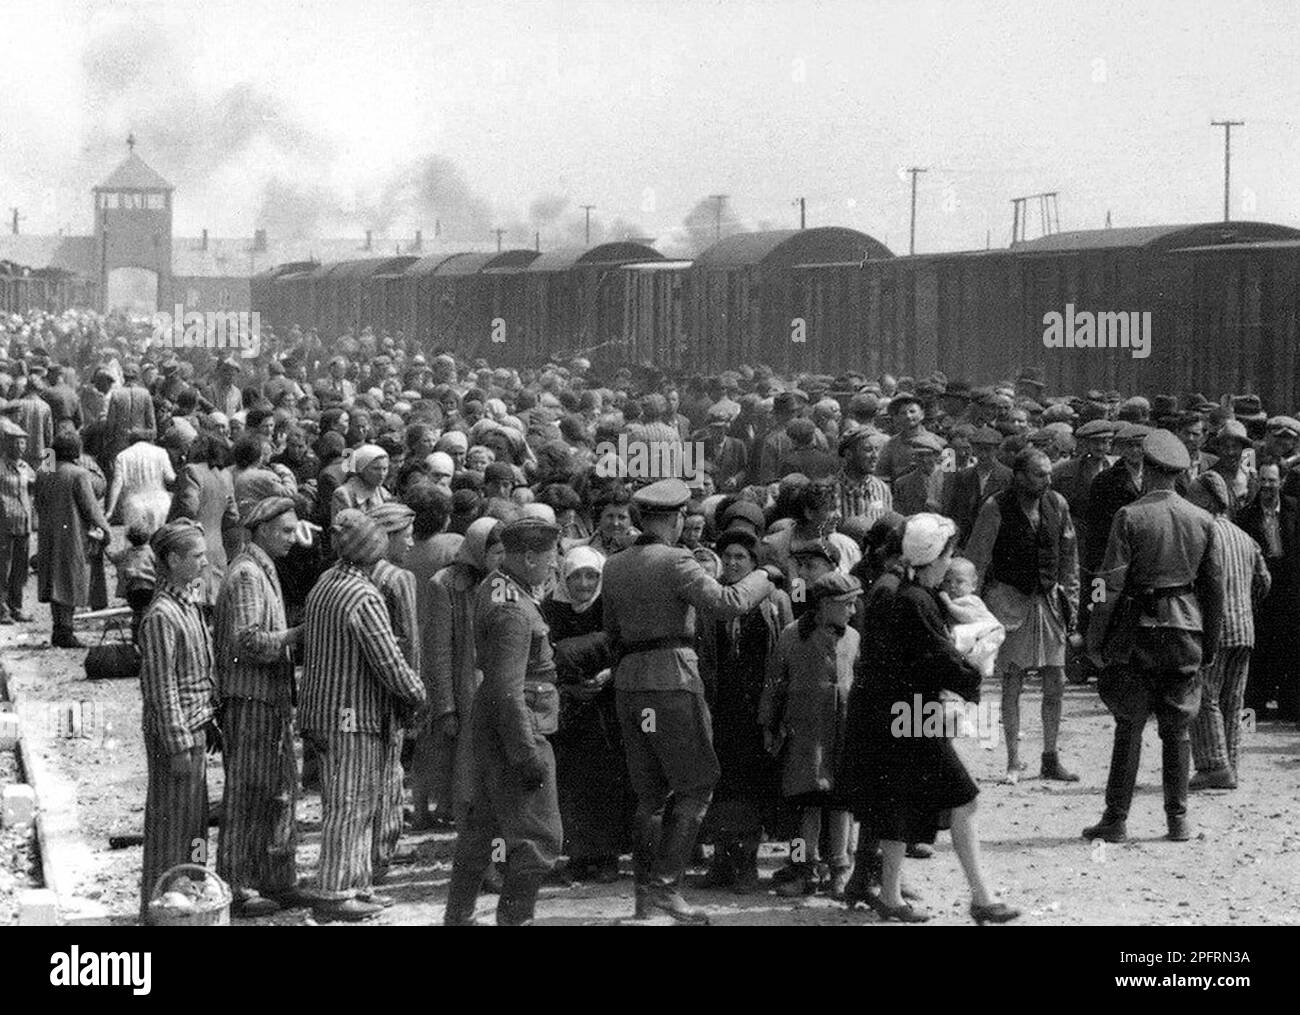 Selezione degli ebrei ungheresi sulla rampa di Auschwitz-II-Birkenau, Polonia occupata in Germania, maggio/giugno 1944, durante la fase finale dell'Olocausto. Foto Stock